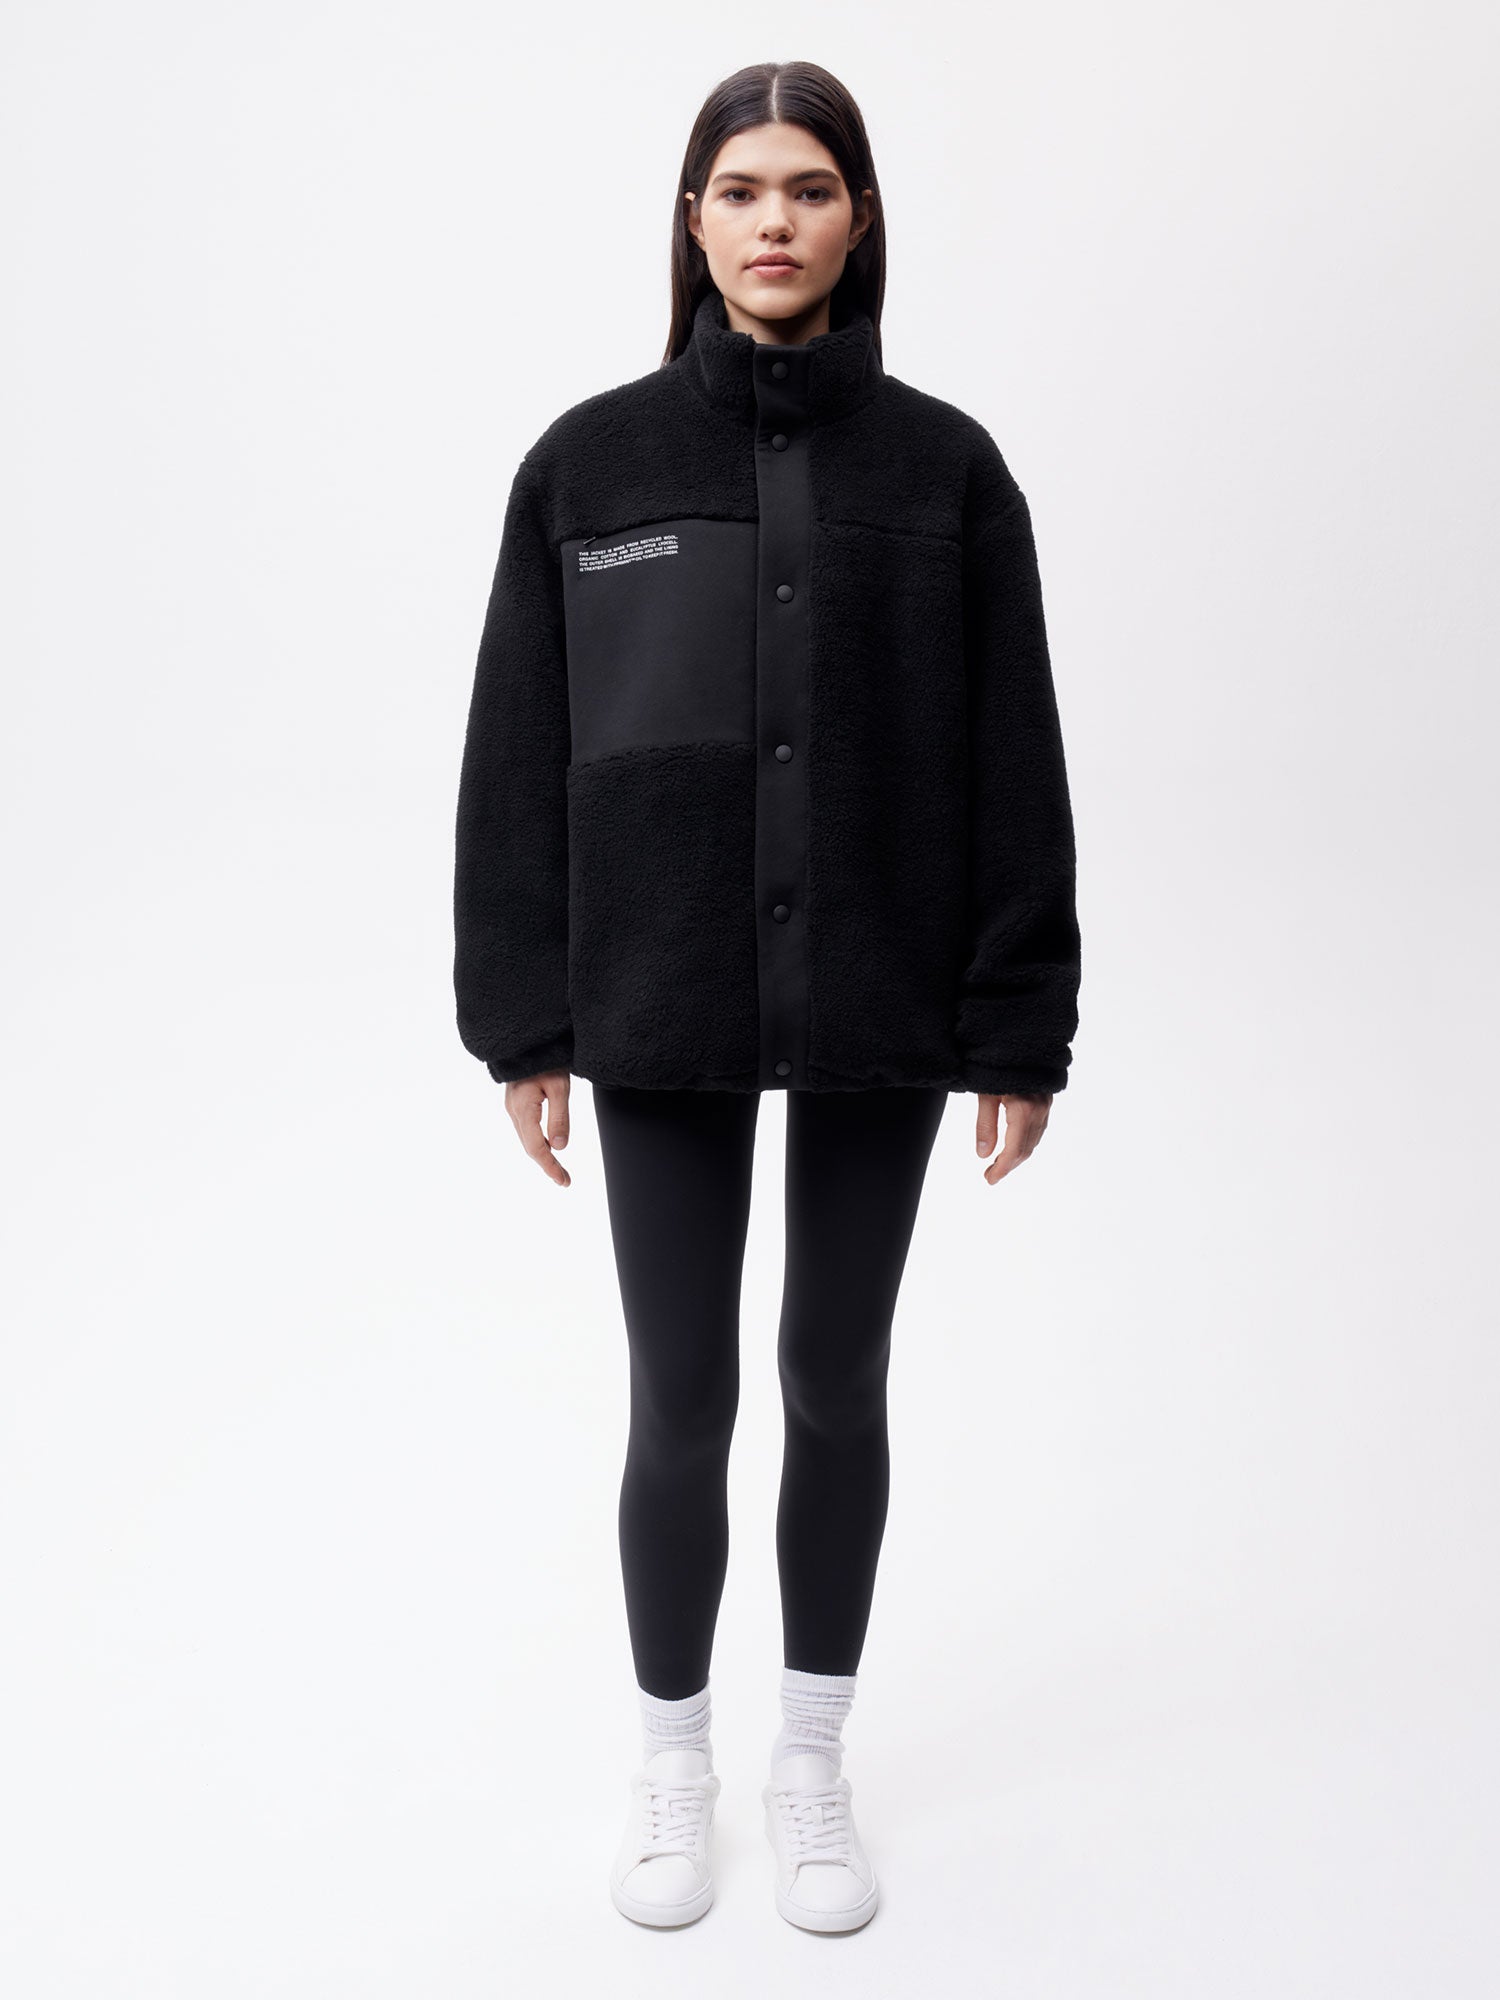 Recycled Wool Fleece Jacket—black